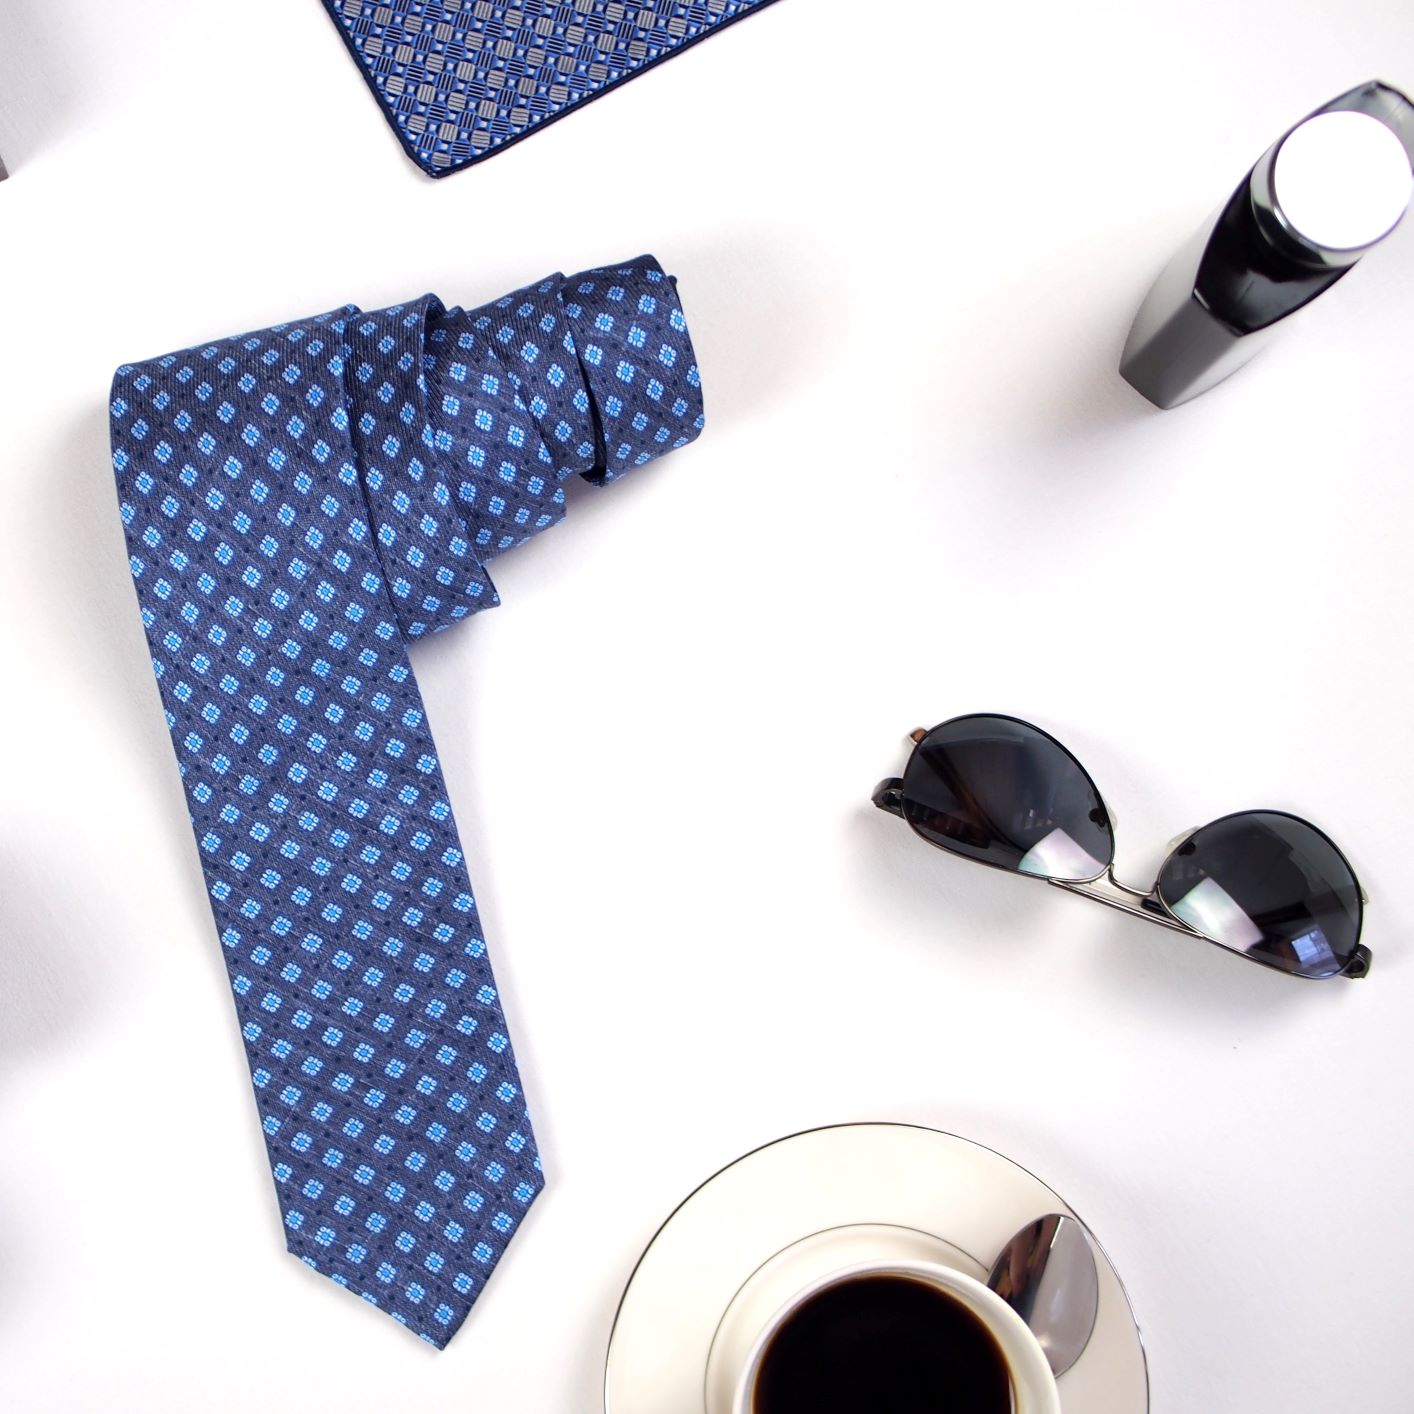 Krawat i koszula – ponadczasowy duet. O kolorystyce słów kilka.